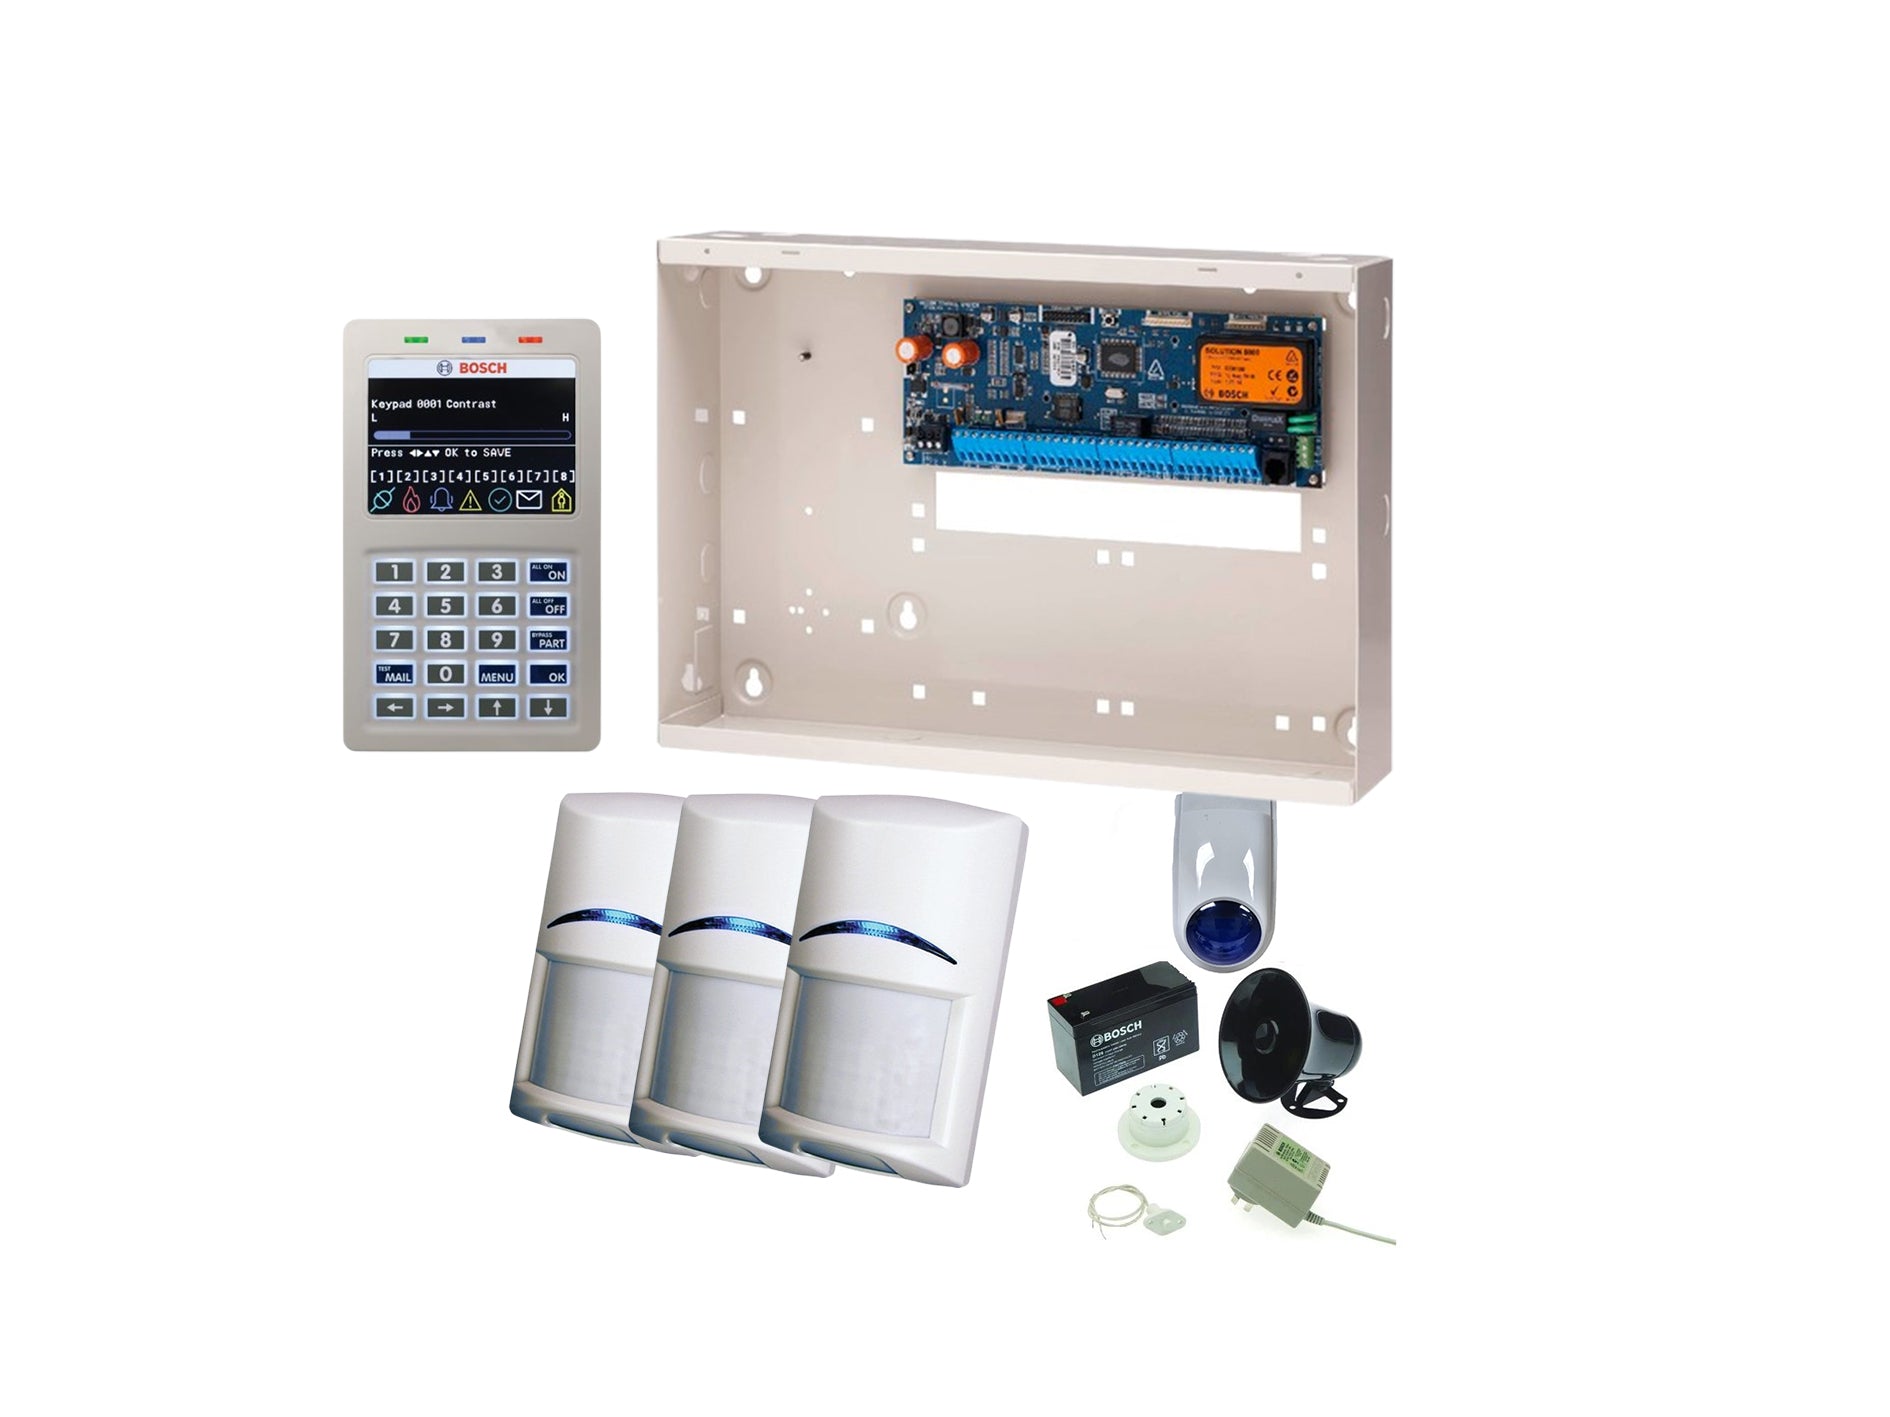 BOSCH, Solution 6000, Alarm kit, + CC610PB panel, CP736B Smart Prox LCD keypad, 3x standard PIR detectors + Accessories Included